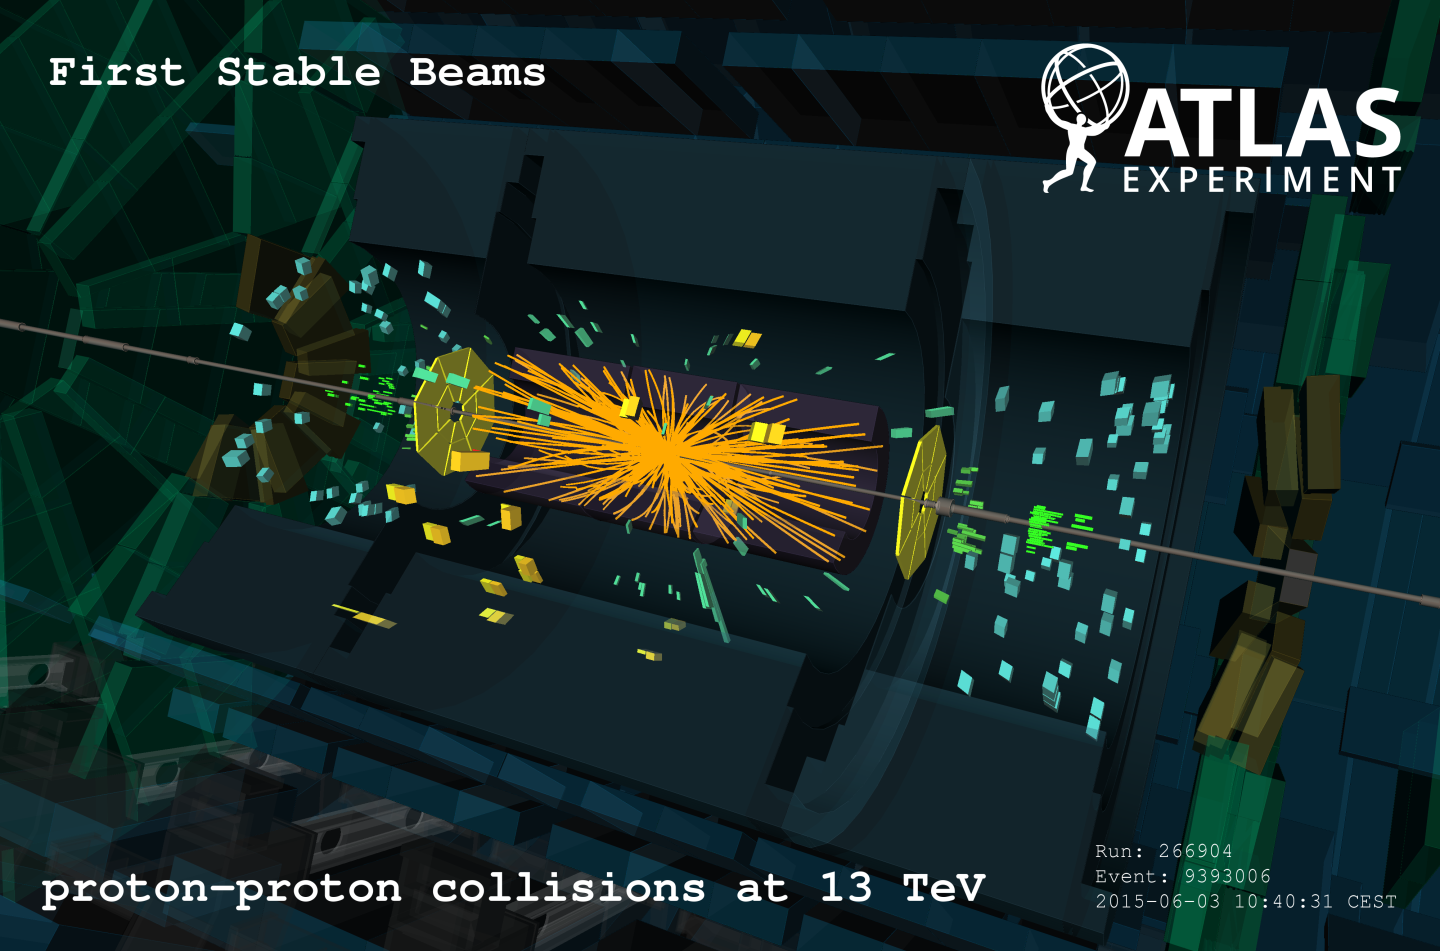 人類未踏のエネルギーでLHC実験が再開した瞬間のATLAS検出器のイベントディスプレイ。図の左右からそれぞれ飛んできた陽子の塊同士が検出器の中央で衝突すると、その時の素粒子反応でたくさんの粒子が飛び出す。図中の線やブロックは、飛び出した粒子が通過した検出器内部の場所を表す